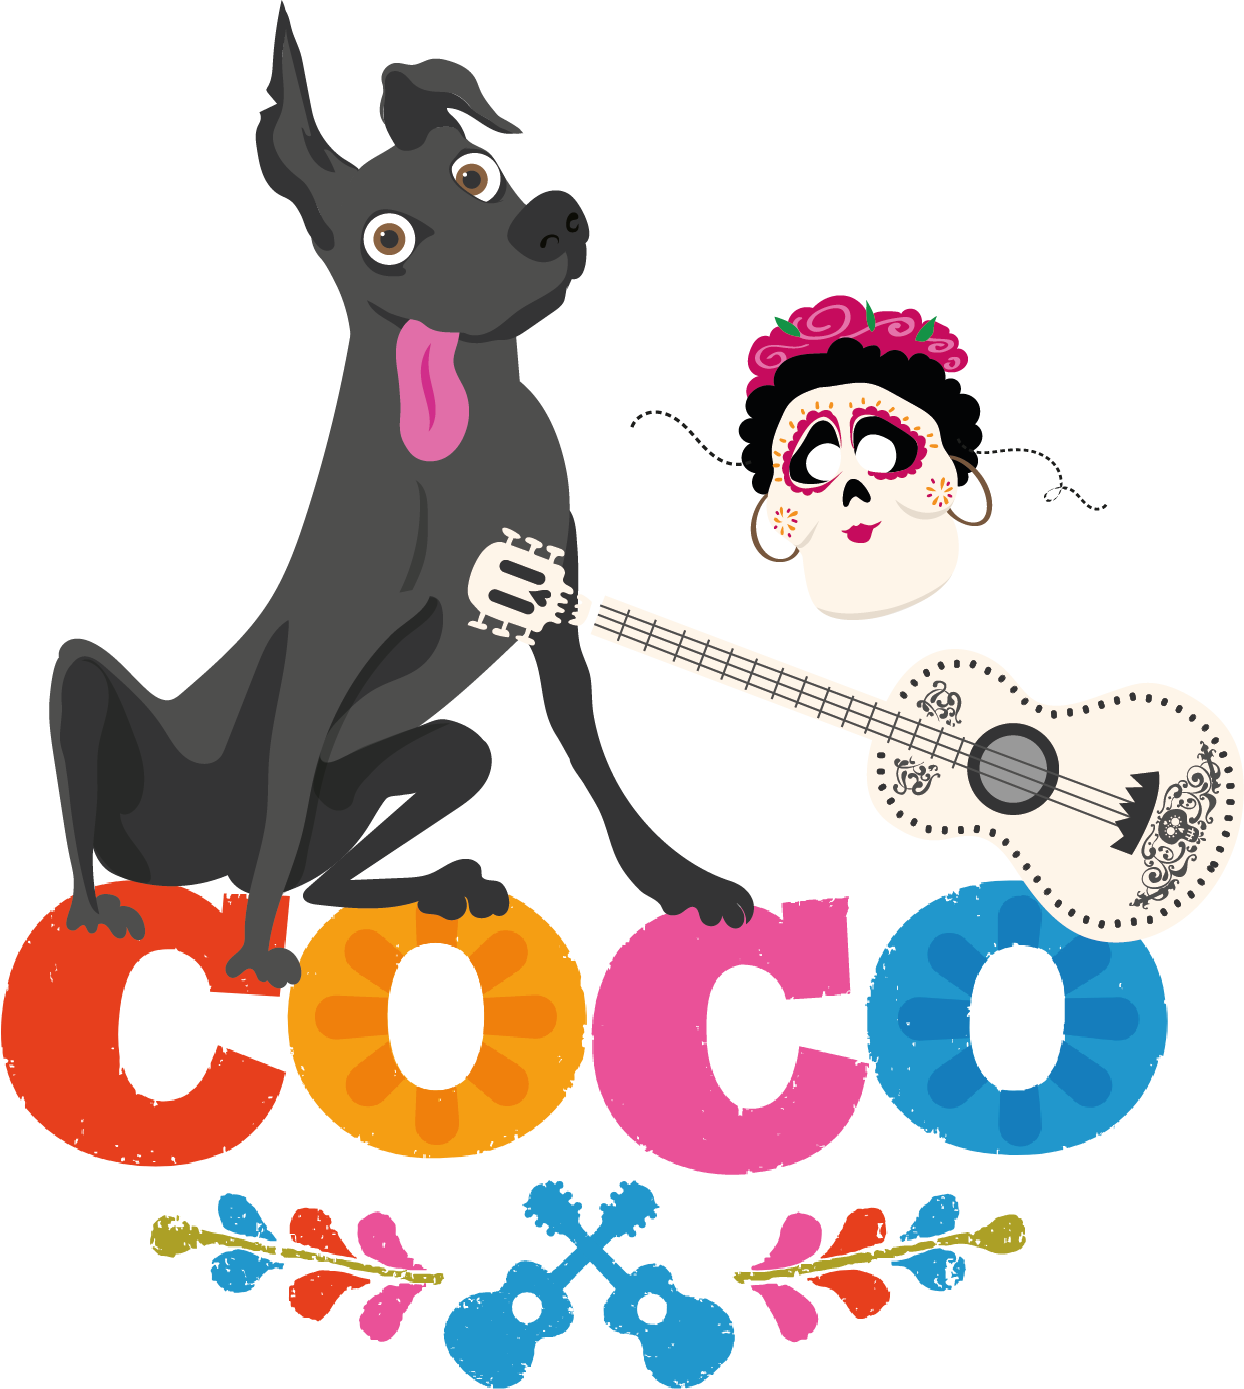 Coco Pixar Transparent Image